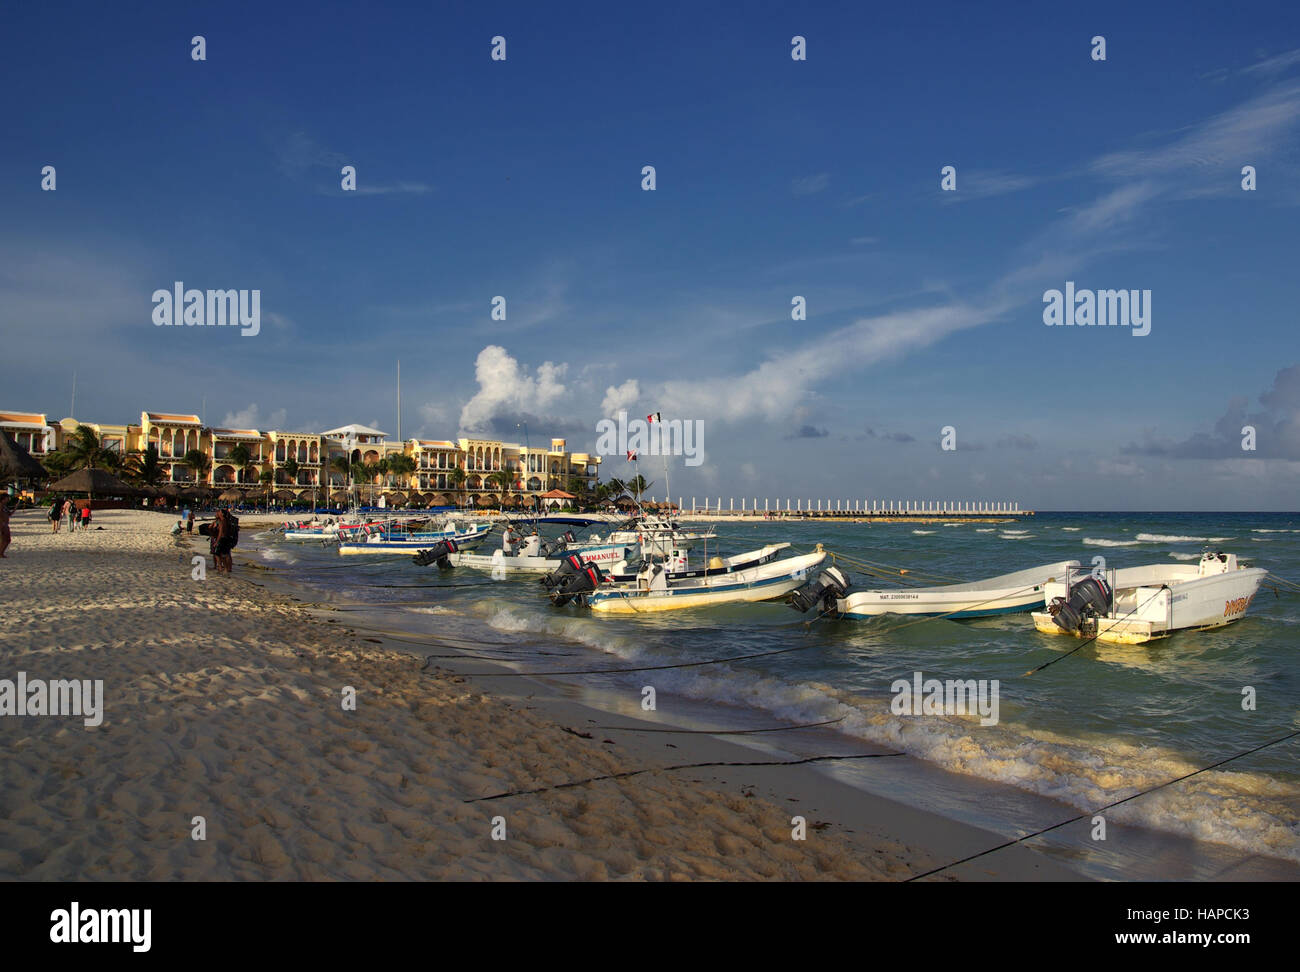 playa del carmen, mexico Stock Photo